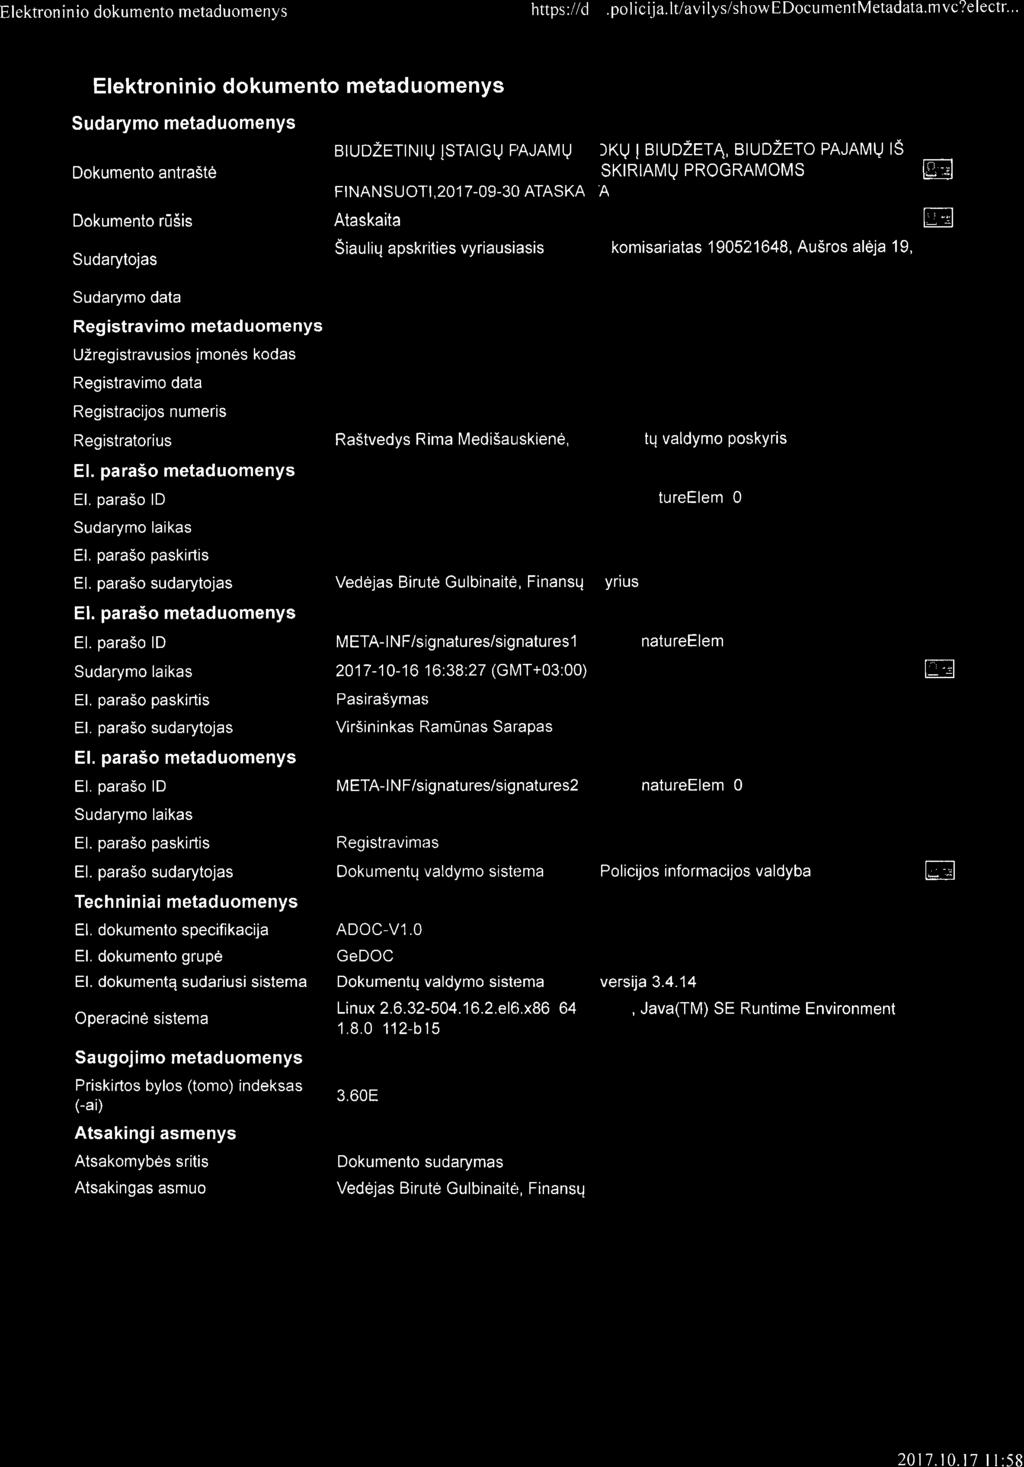 dokumentq sudariusi sistema Operacine sistema Saugoj imo metad uomenys Priskirtos bylos (tomo) indeksas (-ai) Atsakingi asmenys Atsakomybes sritis Atsakingas asmuo BruDzETrNrU STATGV FAJAMU MOKESC ru